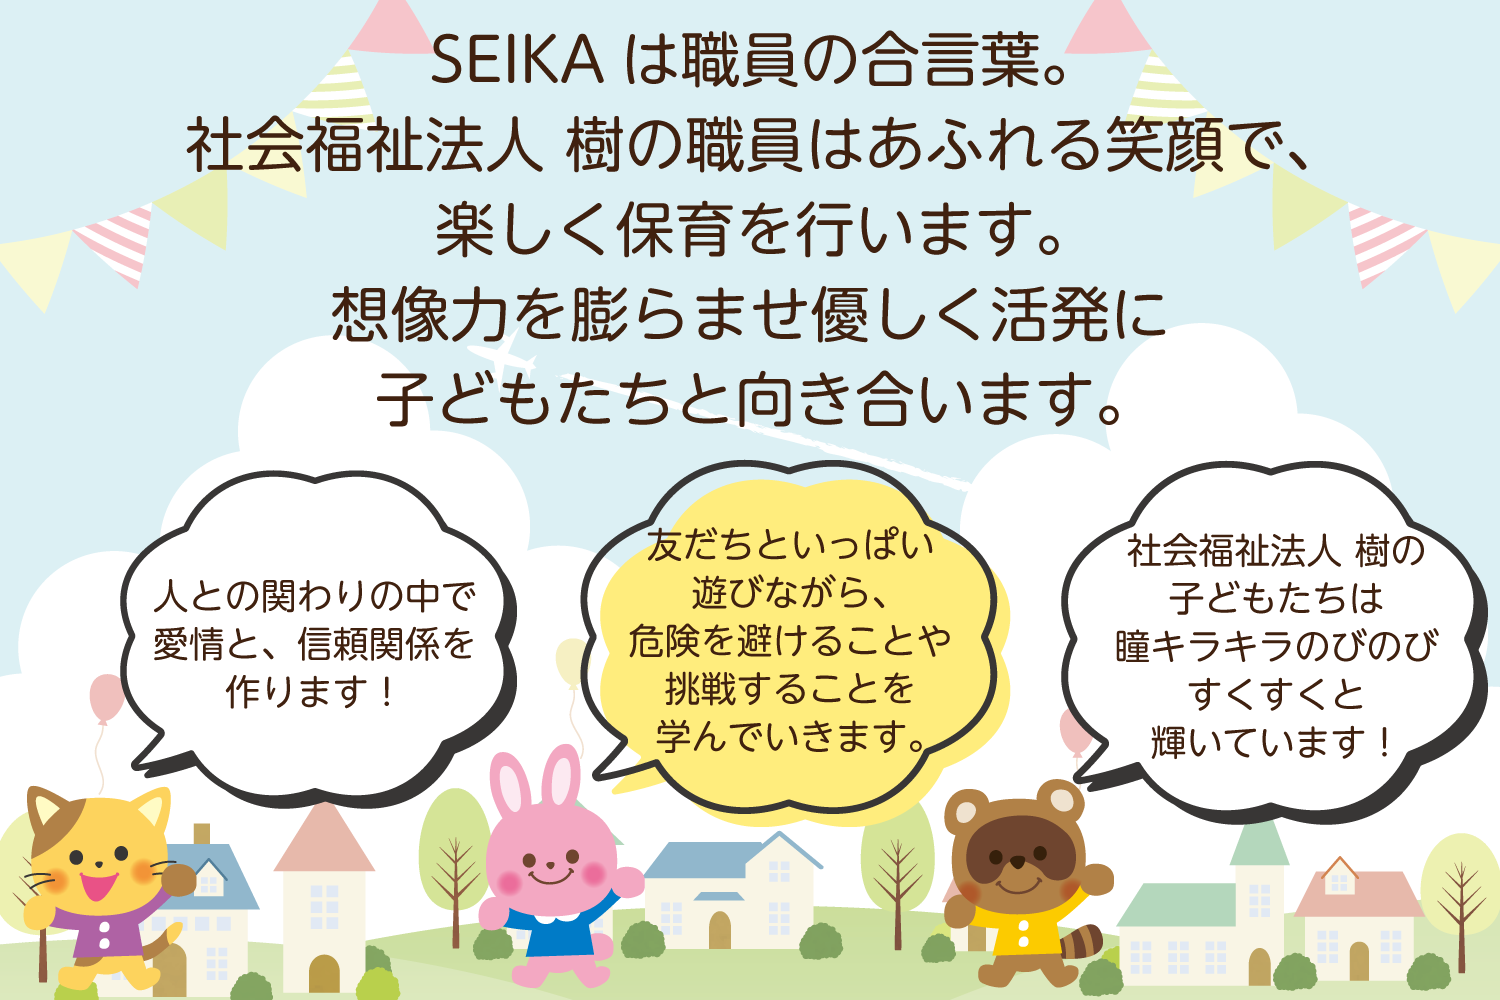 SEIKAは職員の合言葉。